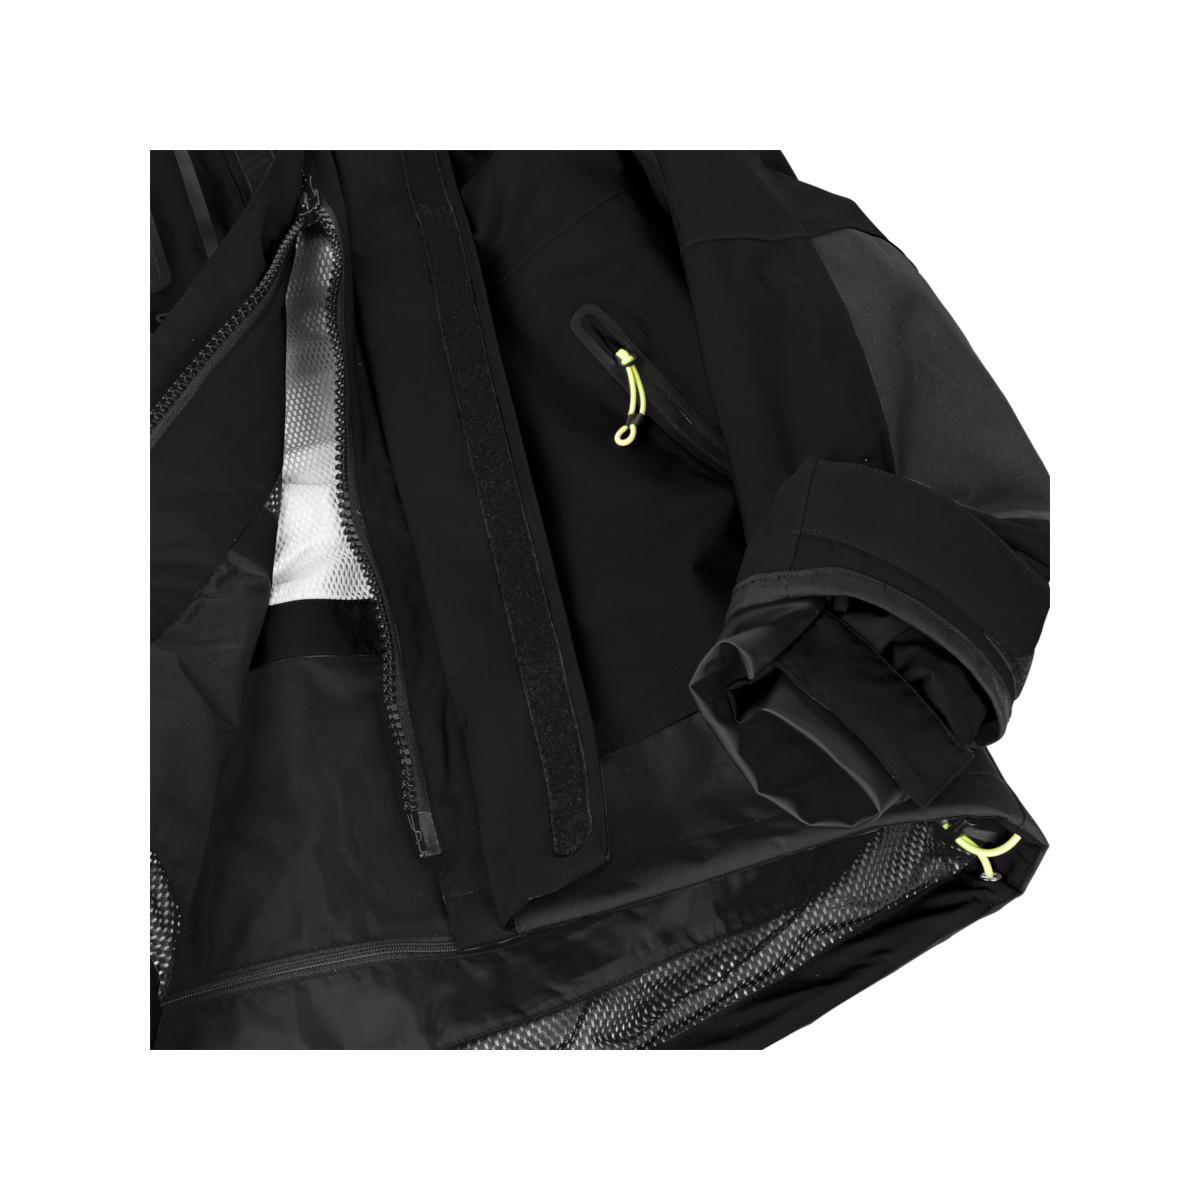 12skipper Magellan veste de quart hauturière, unisexe - noir, taille M